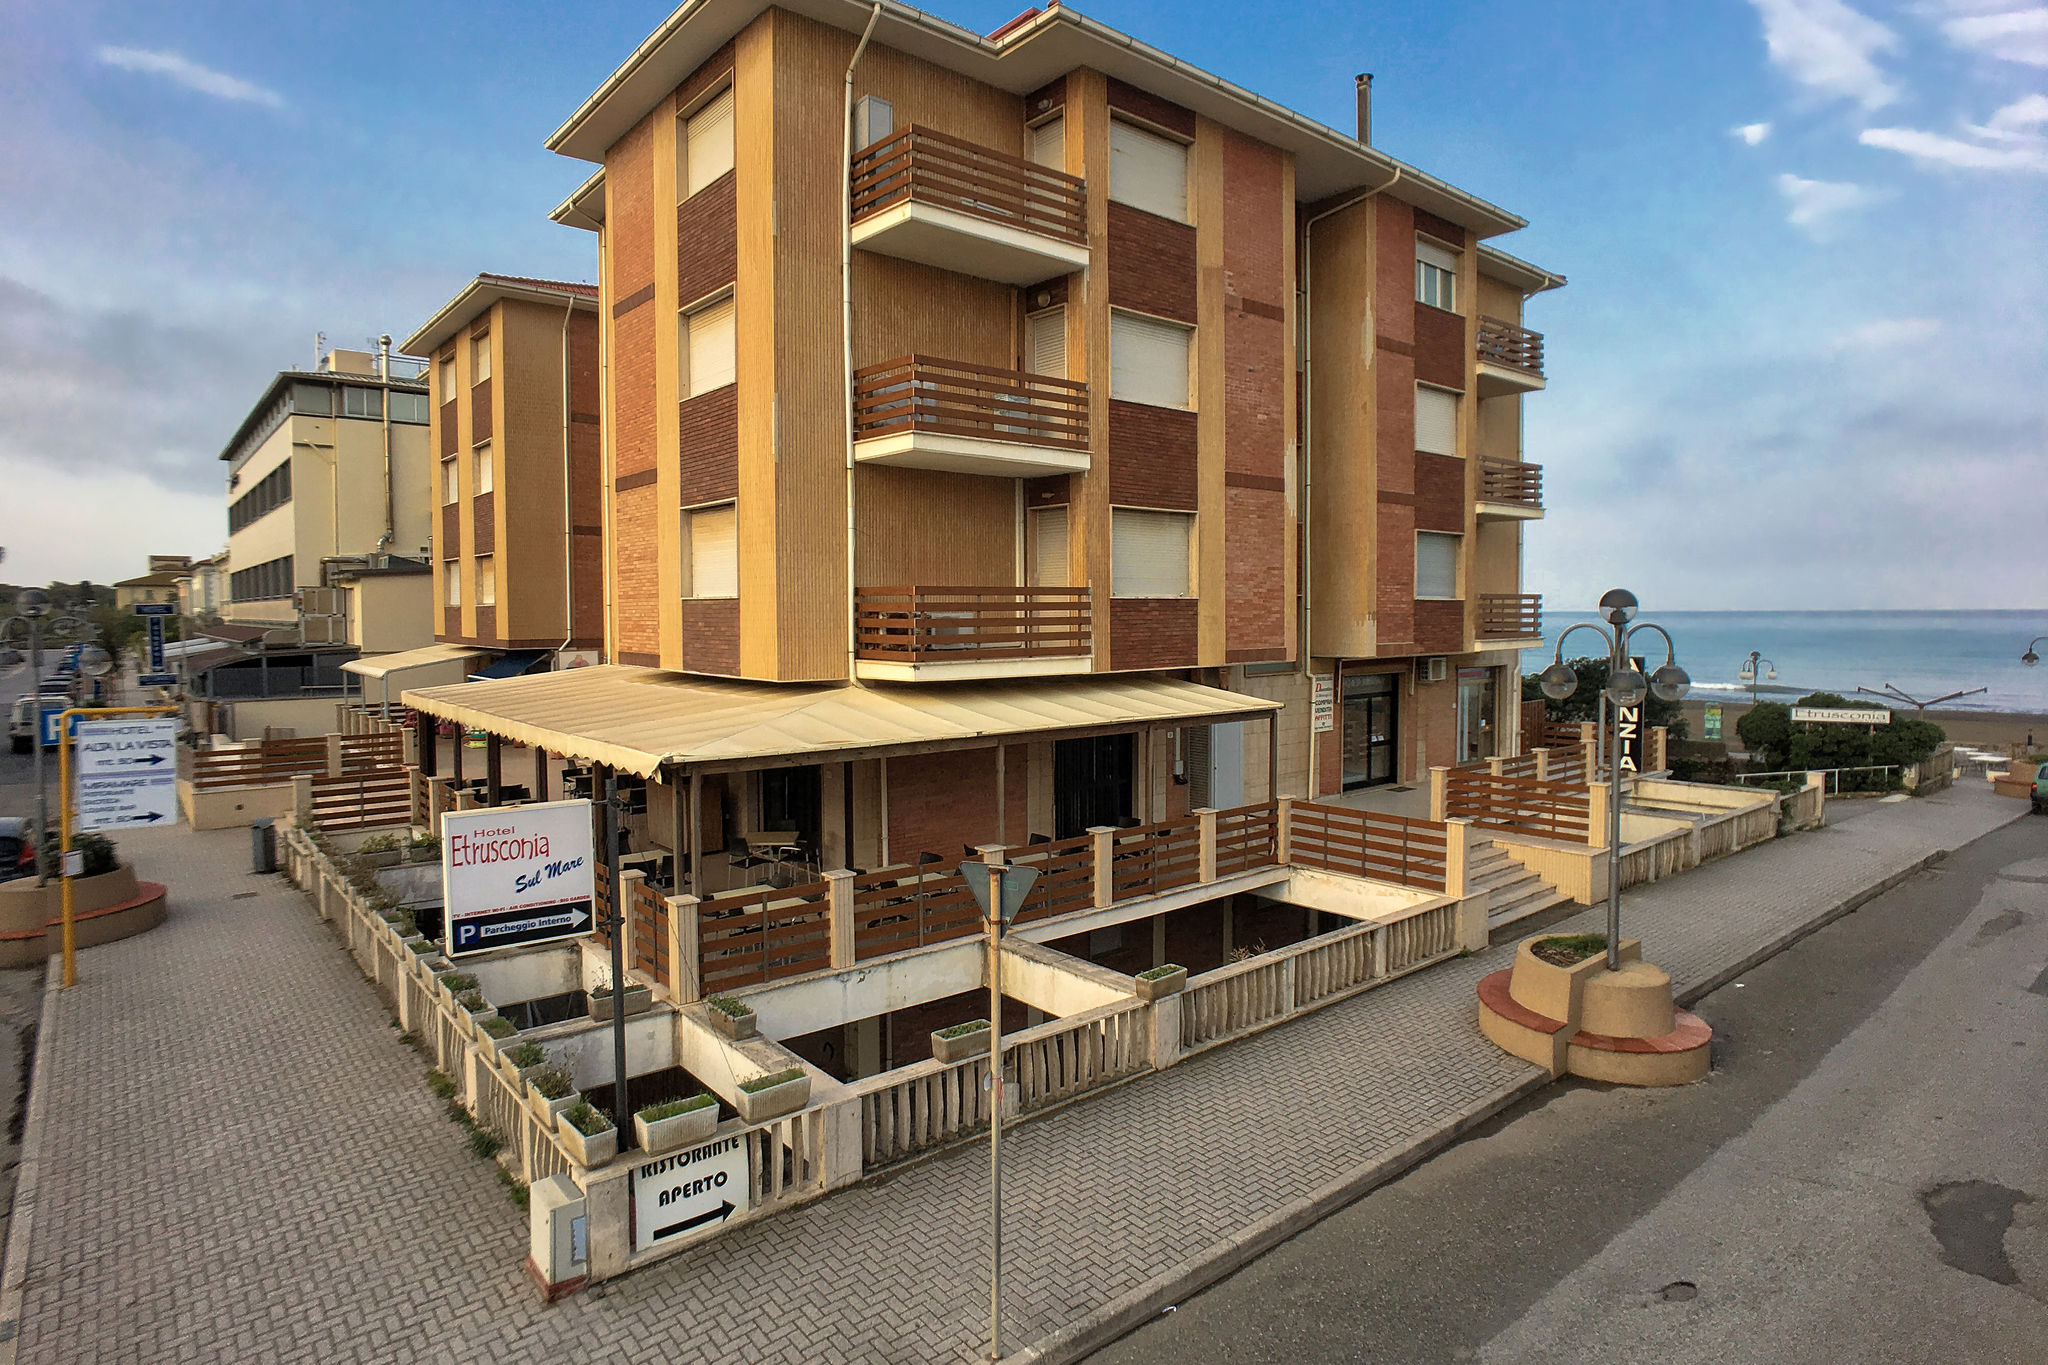 Ferienhaus in Castagneto Carducci in der Nähe des Meeres